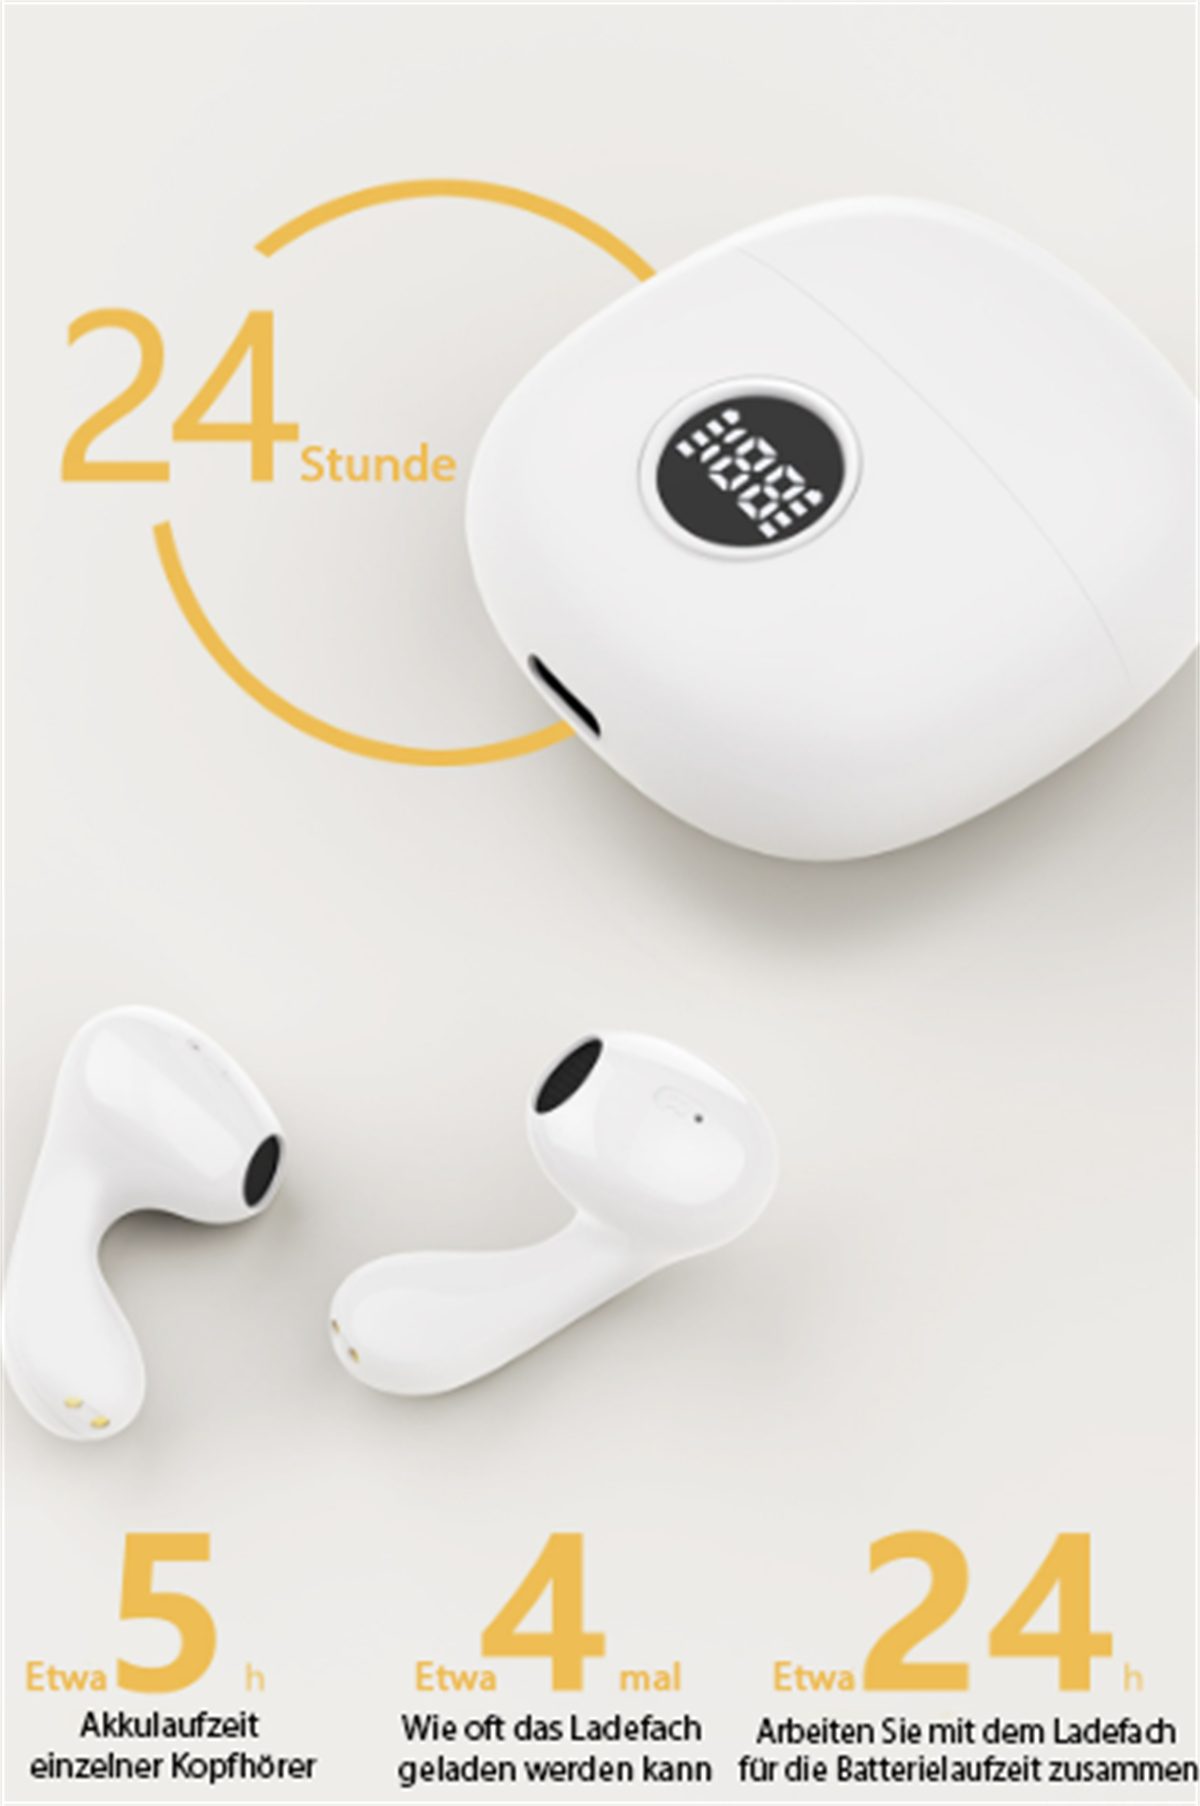 selected In-Ear-Kopfhörer lange Digitalanzeige Geräuschunterdrückung In-Ear-Kopfhörer Akkulaufzeit) Weiß V5.3 super (Bluetooth Kabelloser carefully + intelligente mit LED-Anzeige, +